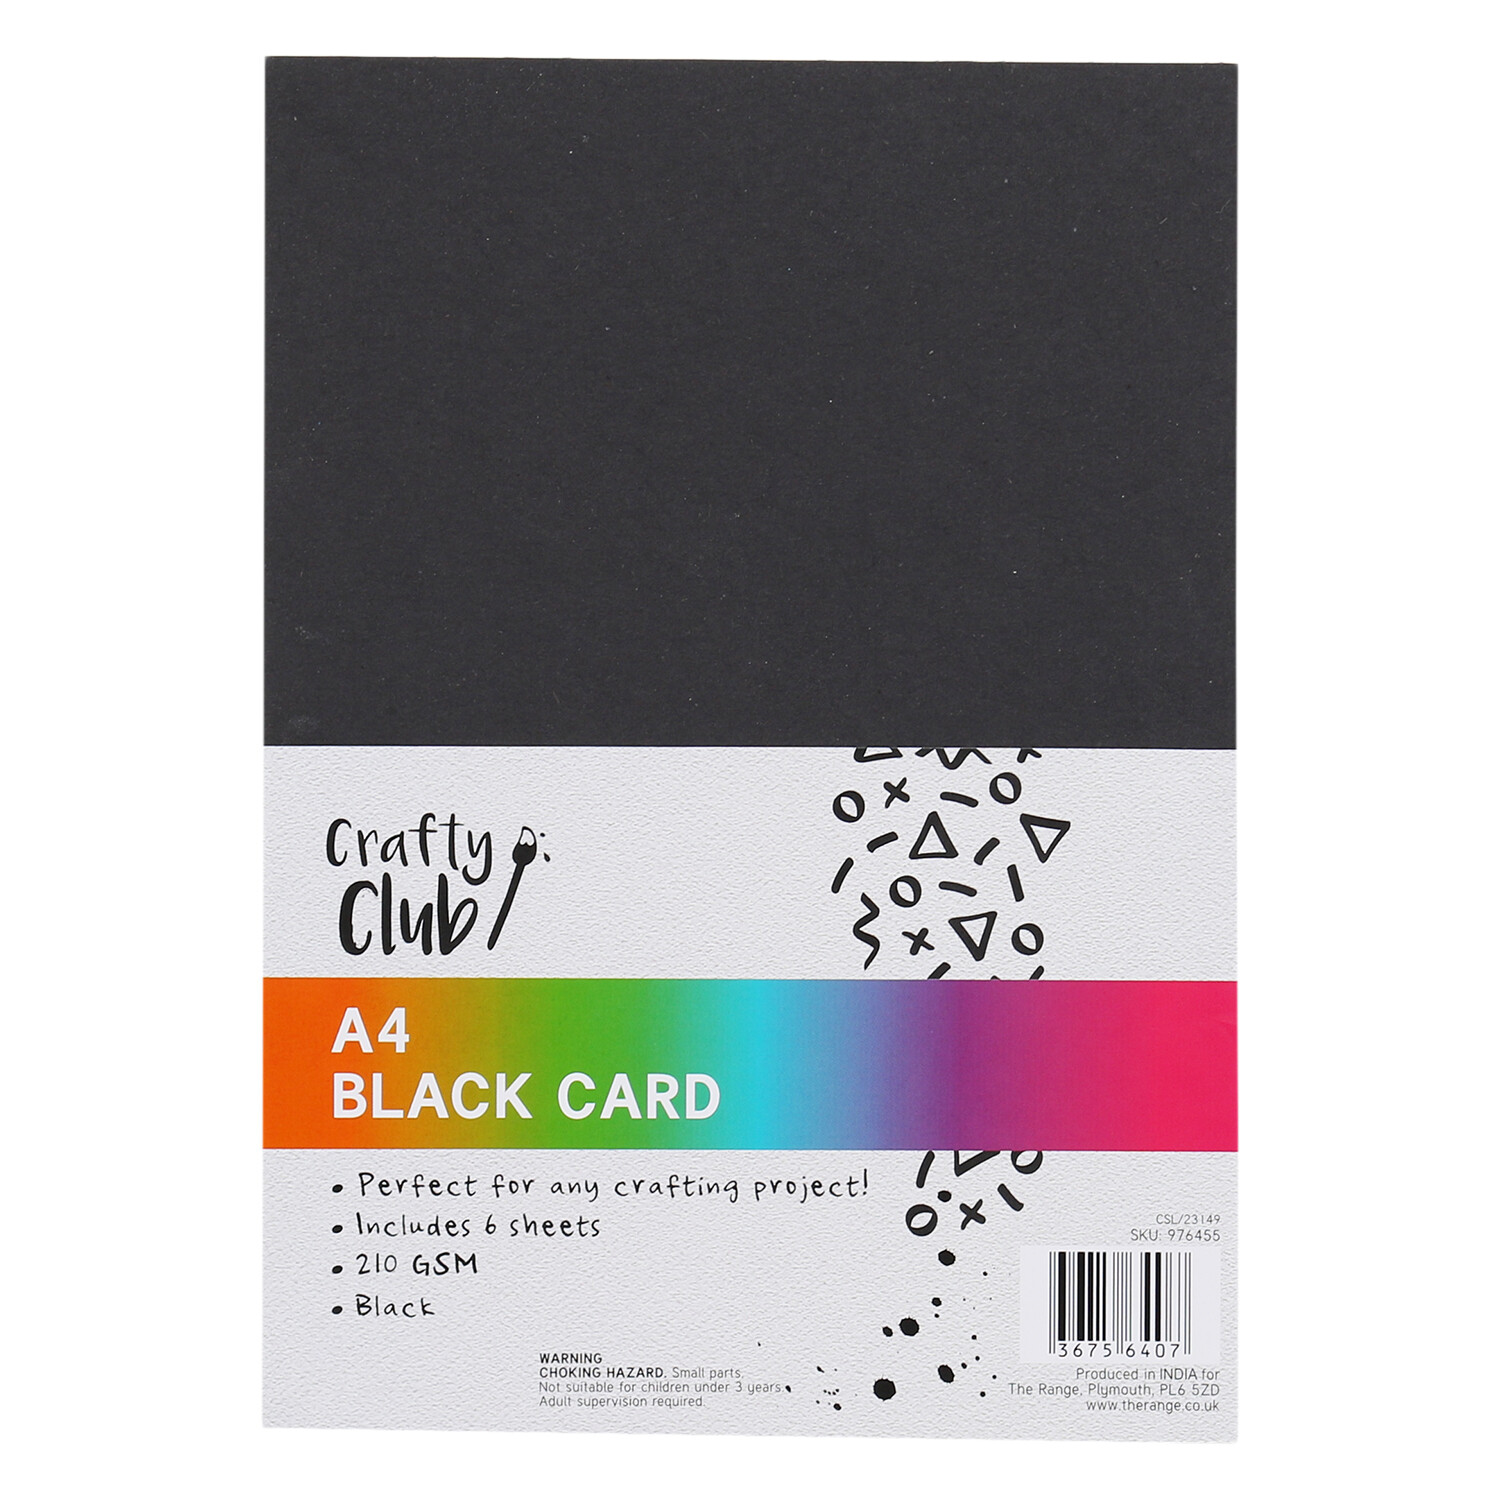 Crafty Club Black Card A4 - 6 Image 1